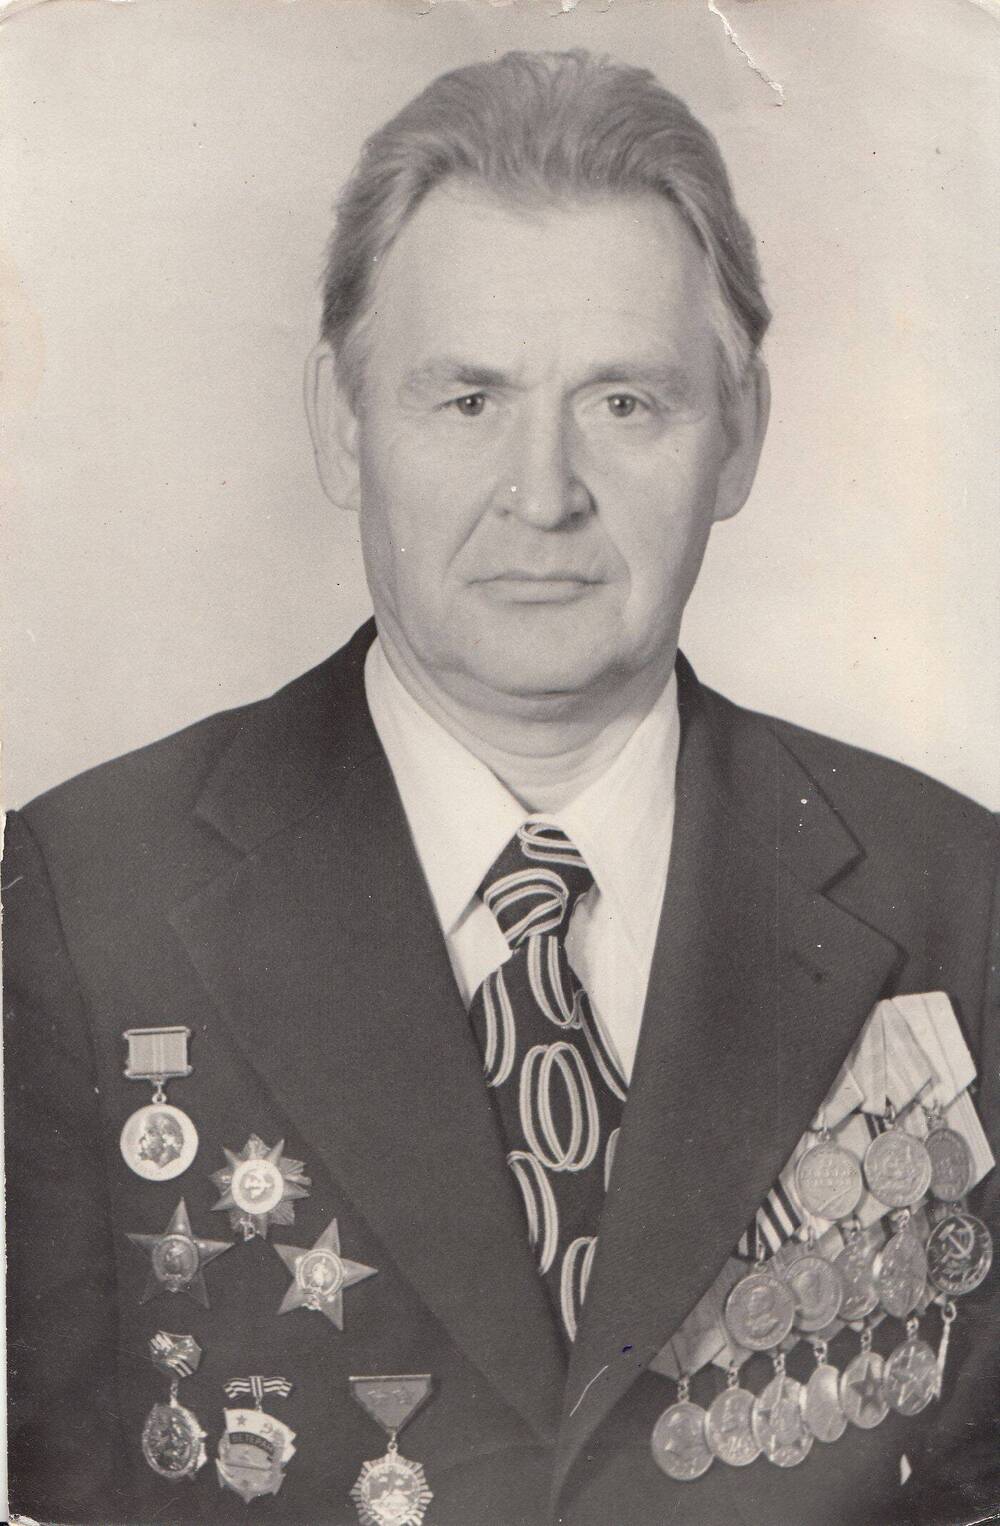 Фотография: Юдов Николай Михайлович, бывший курсант Подольского артиллерийского училища